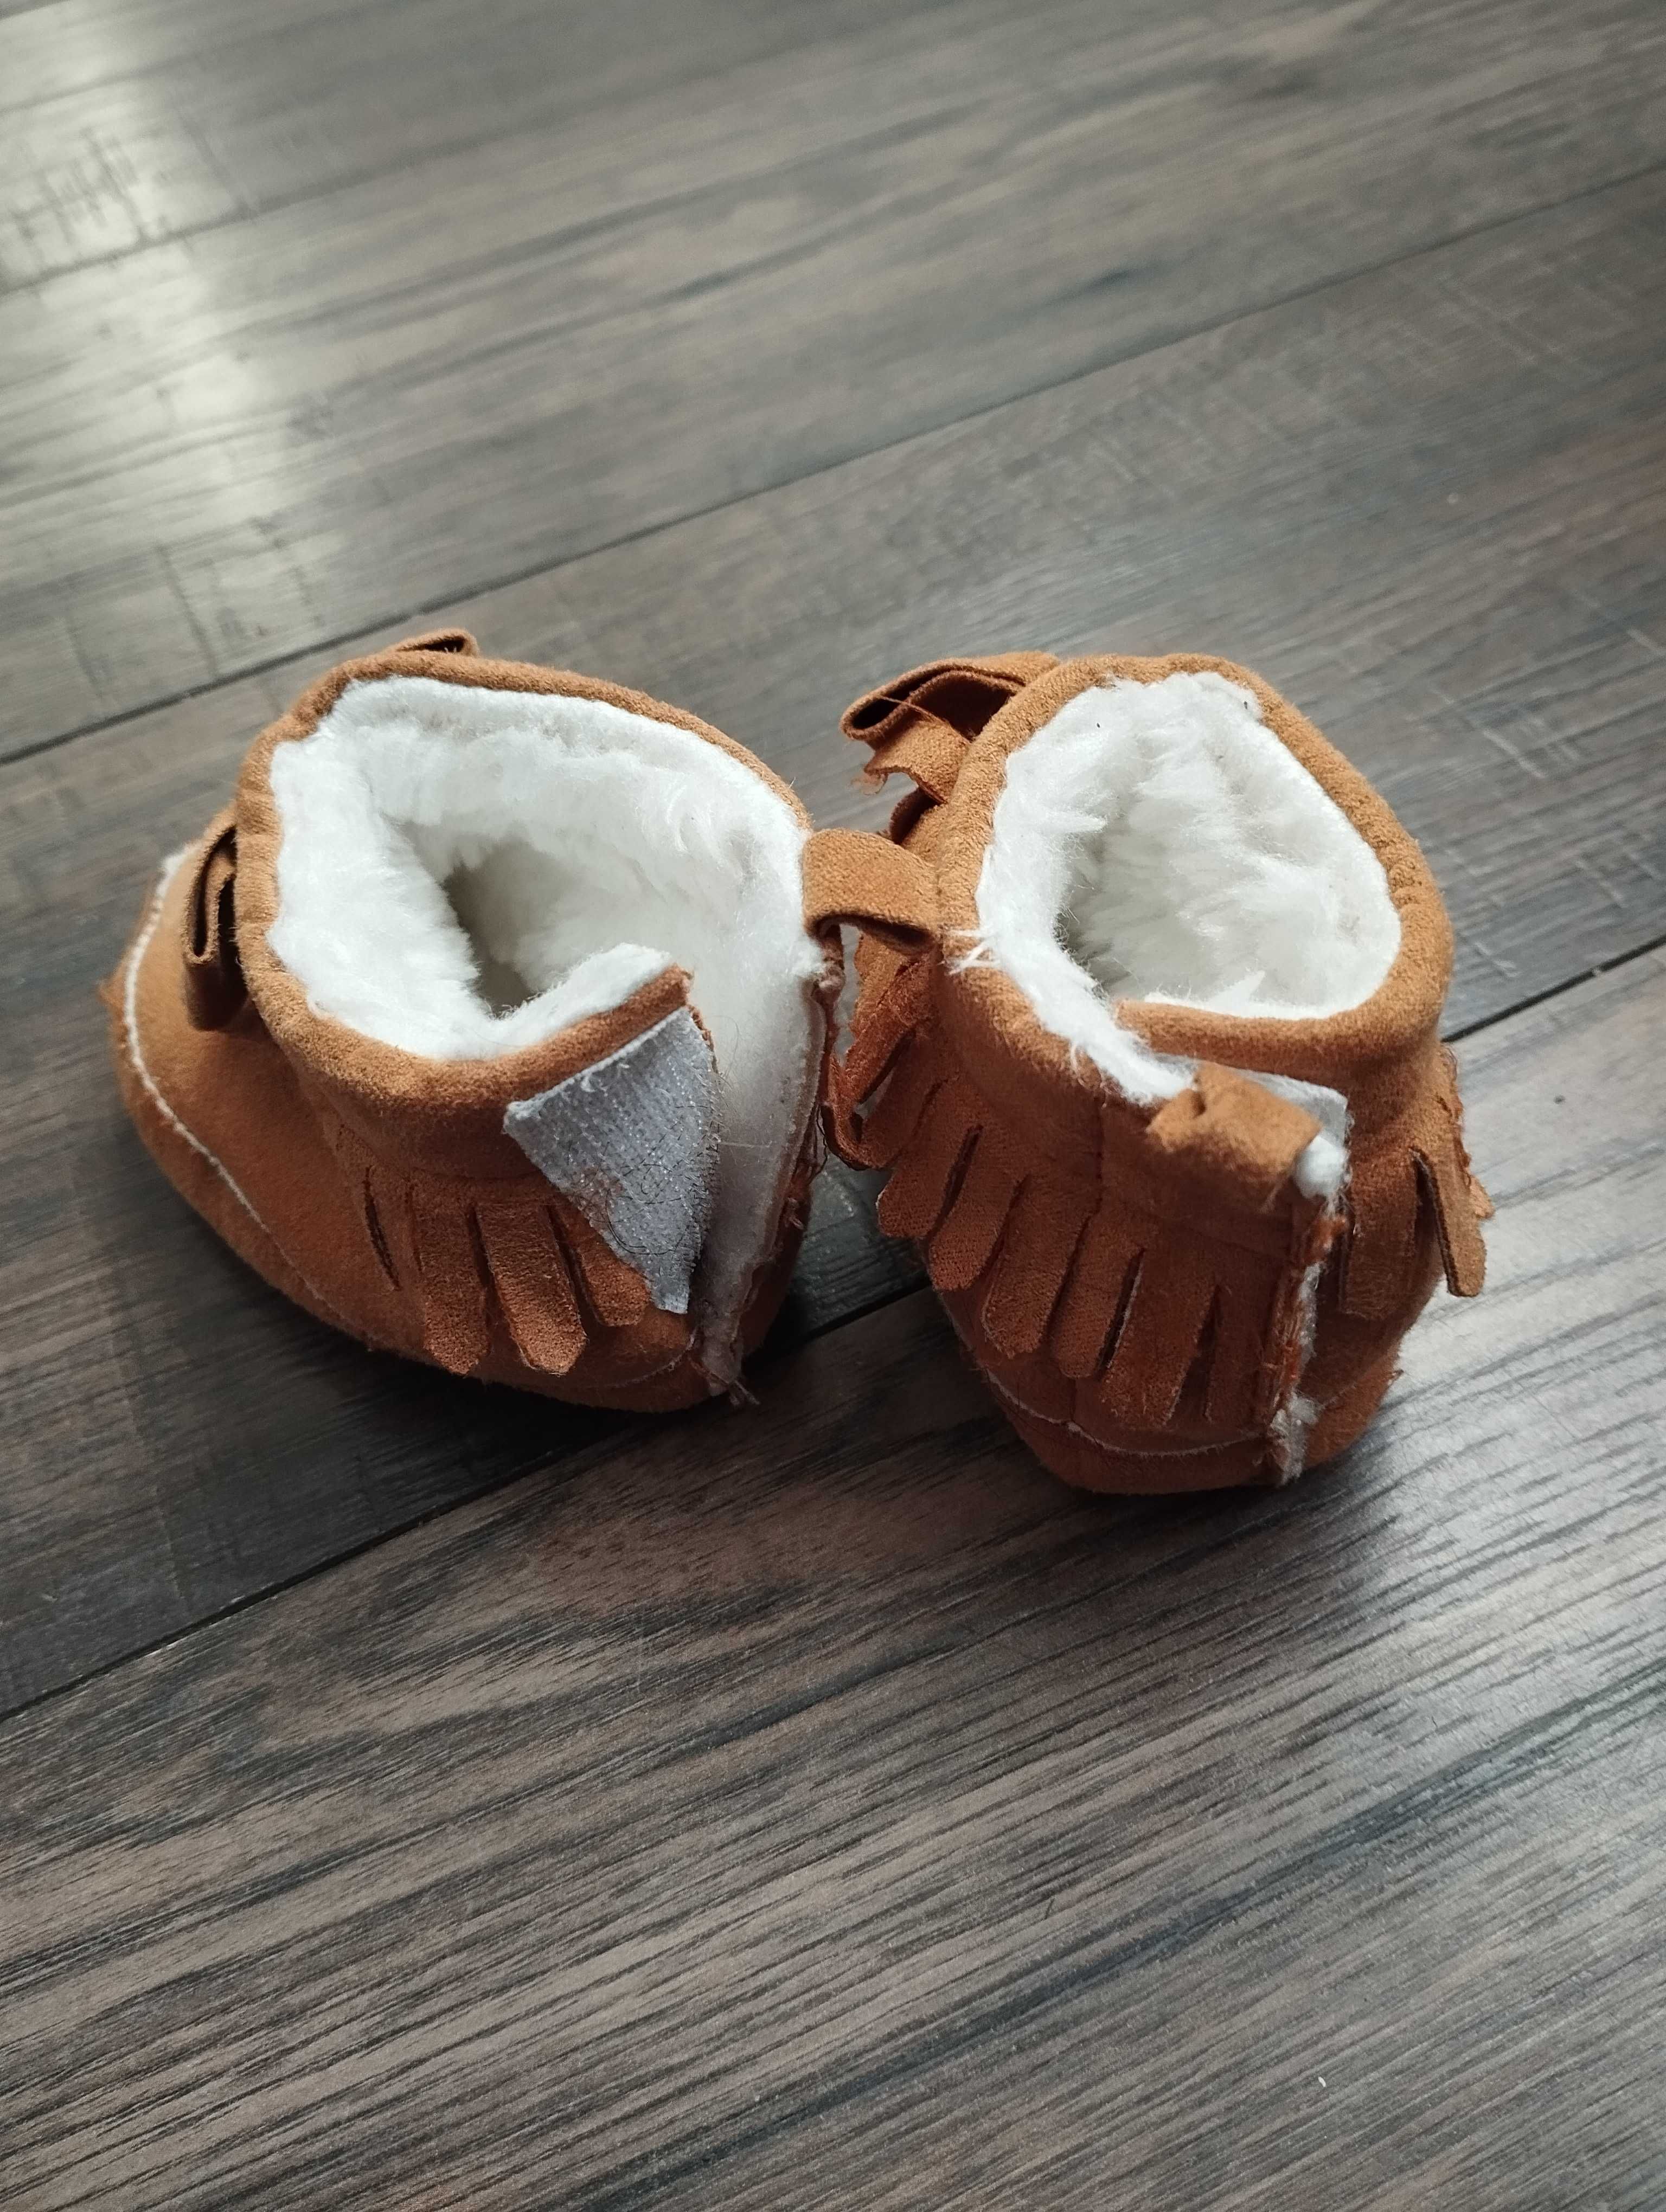 Zimowe buciki dla dziewczynki